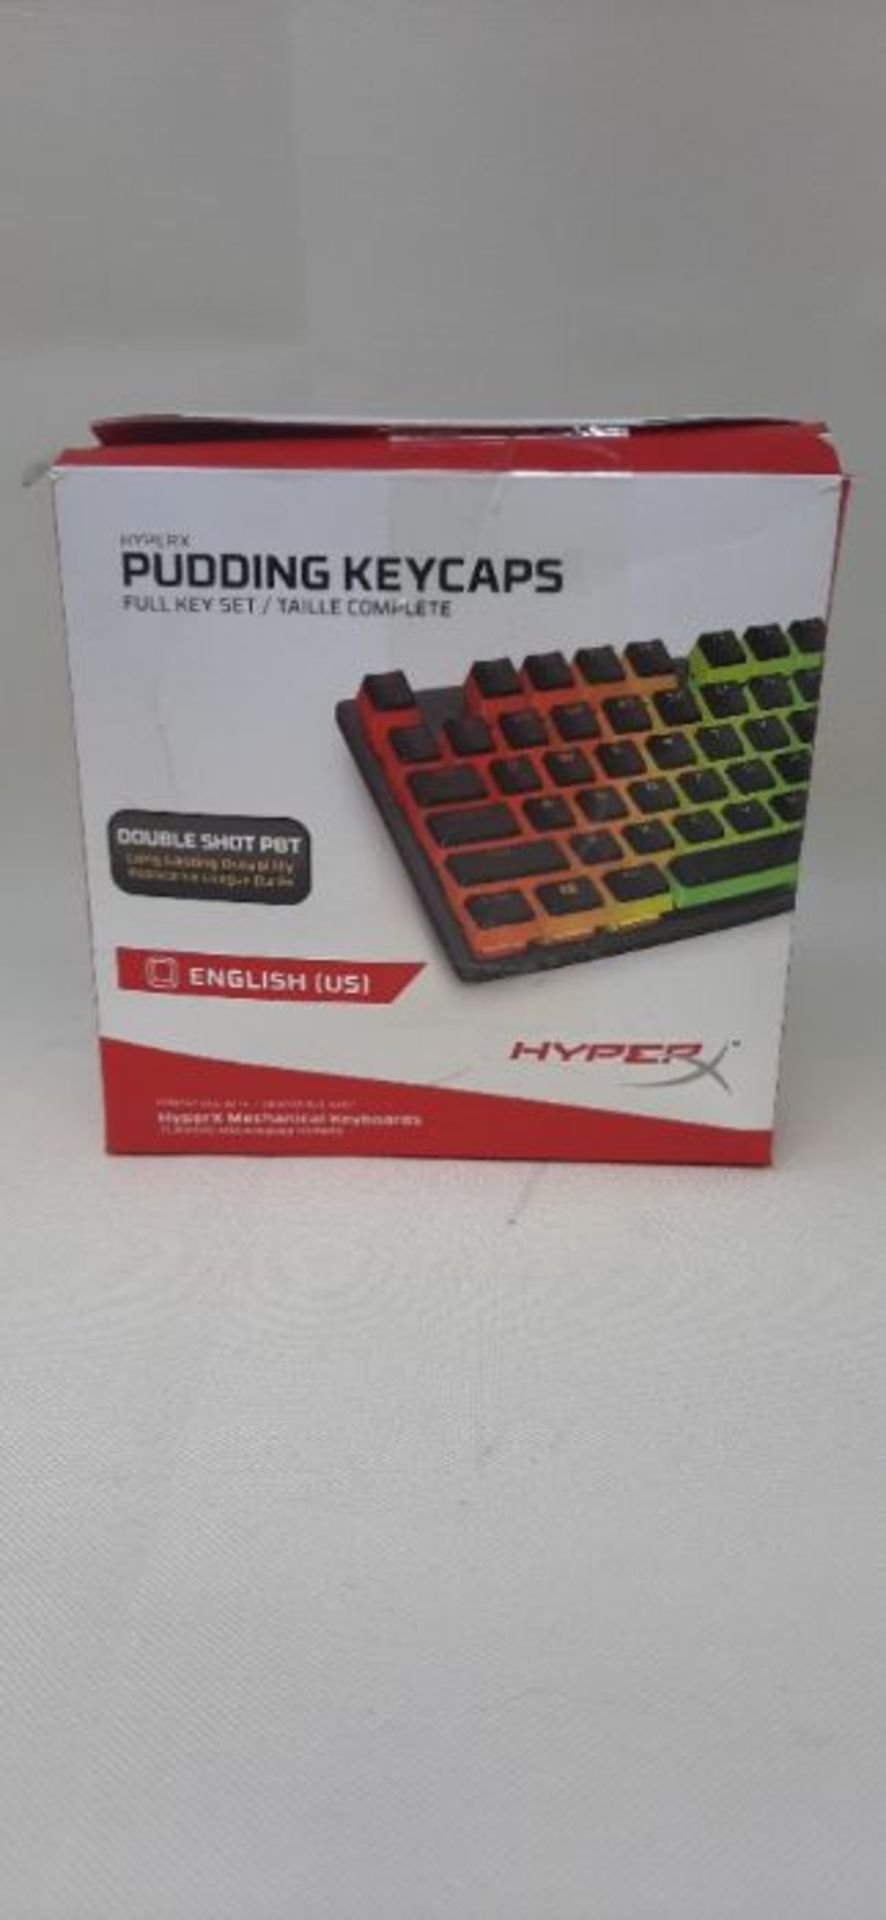 HyperX Pudding Keycaps - Full Key Set - PBT - Black - English (US) Layout - 104 Key, B - Image 2 of 3